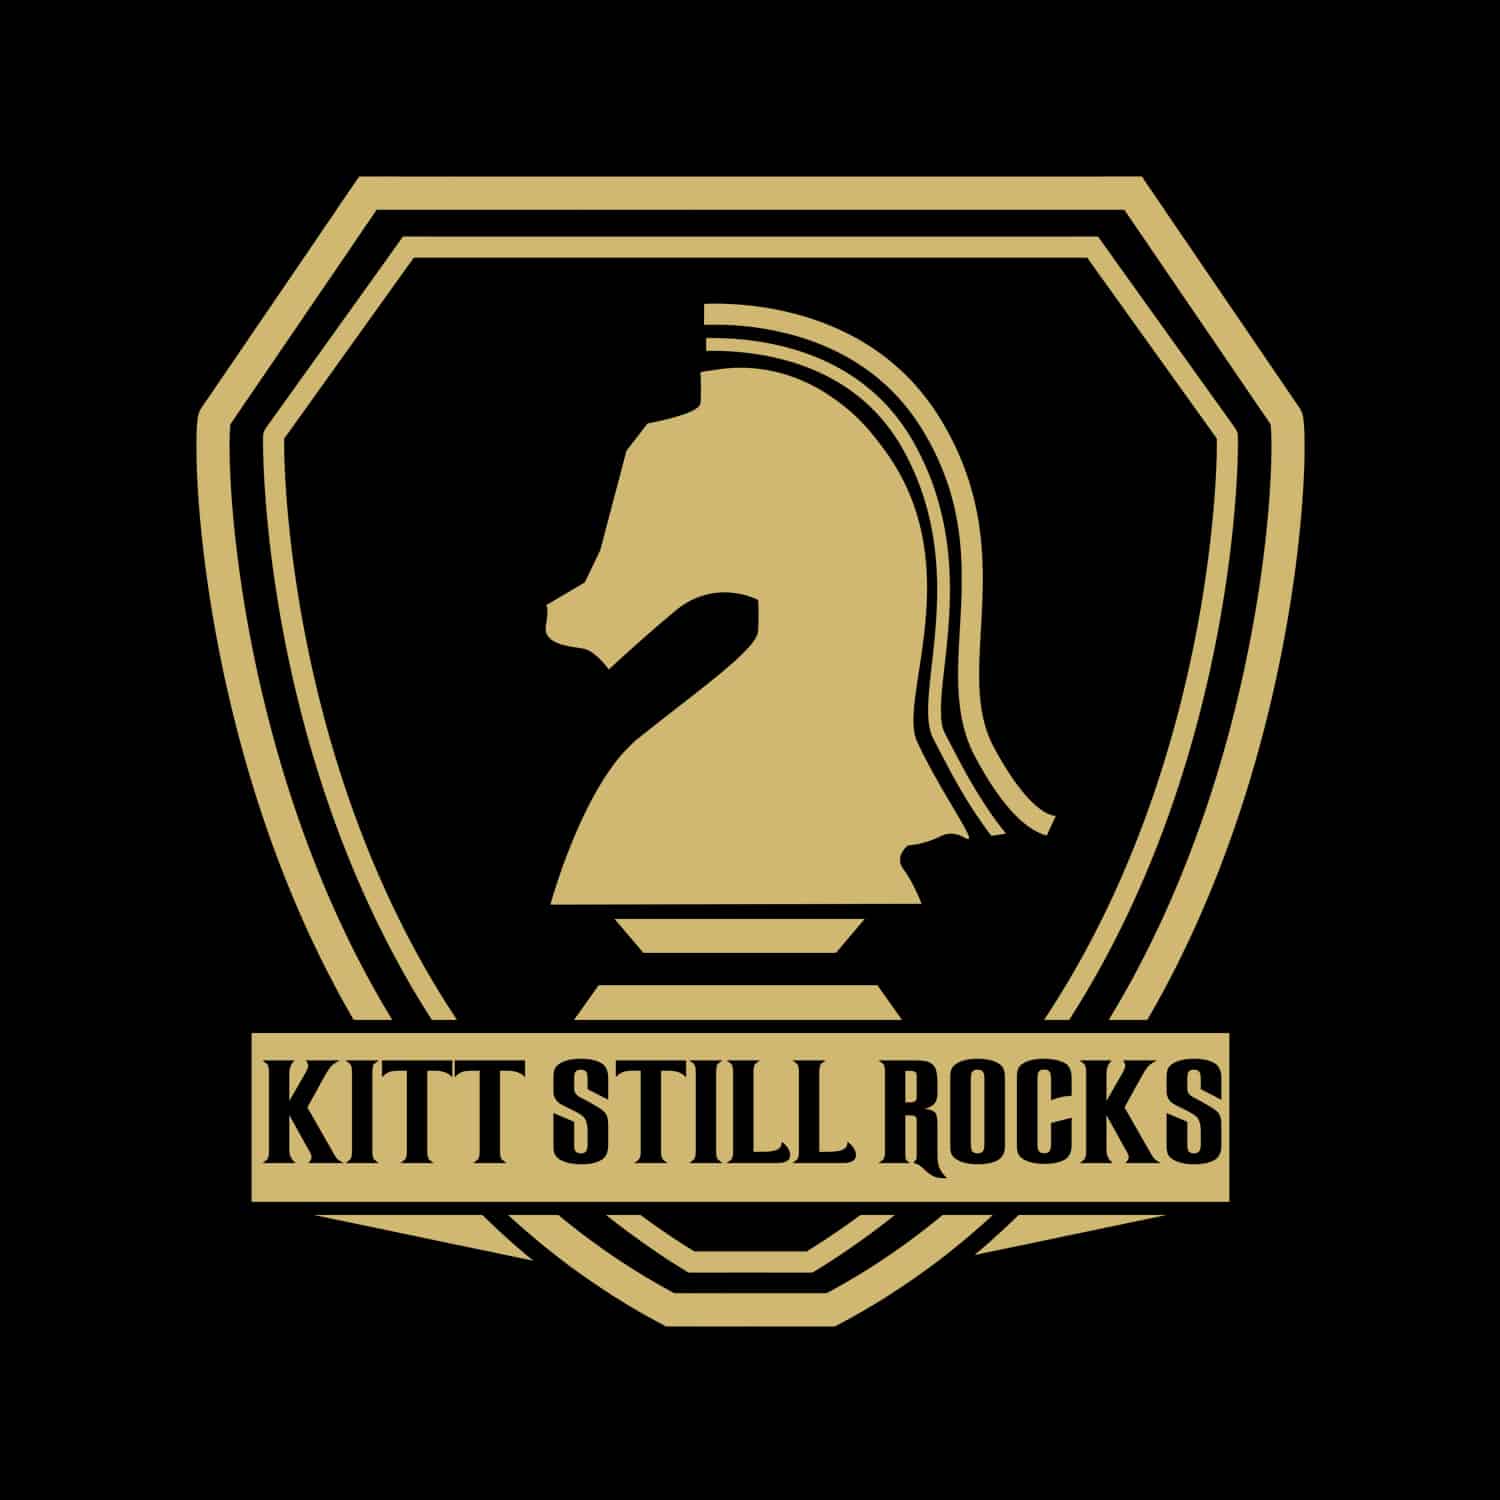 KITT STILL ROCKS